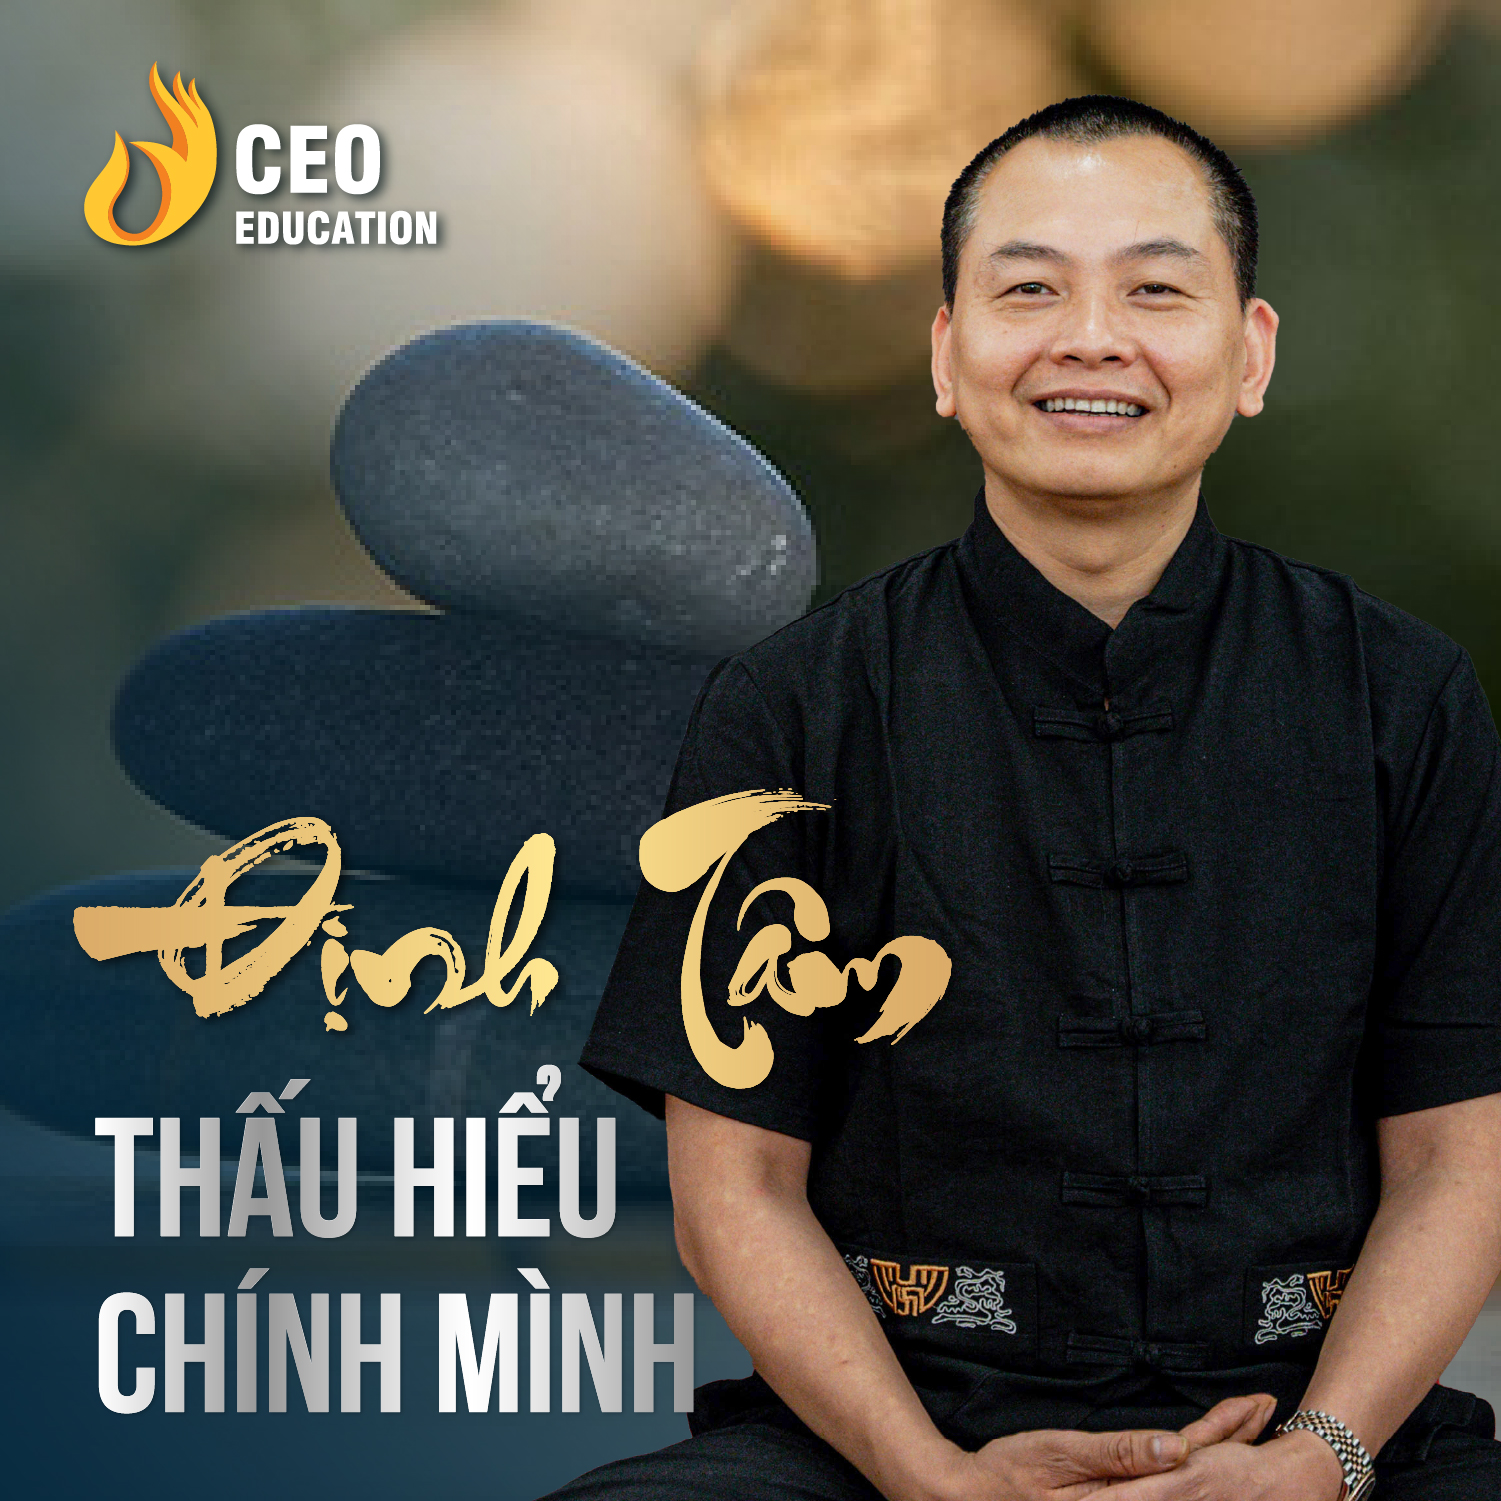 Định tâm để hiểu chính mình | Ngô Minh Tuấn | Học Viện CEO Việt Nam